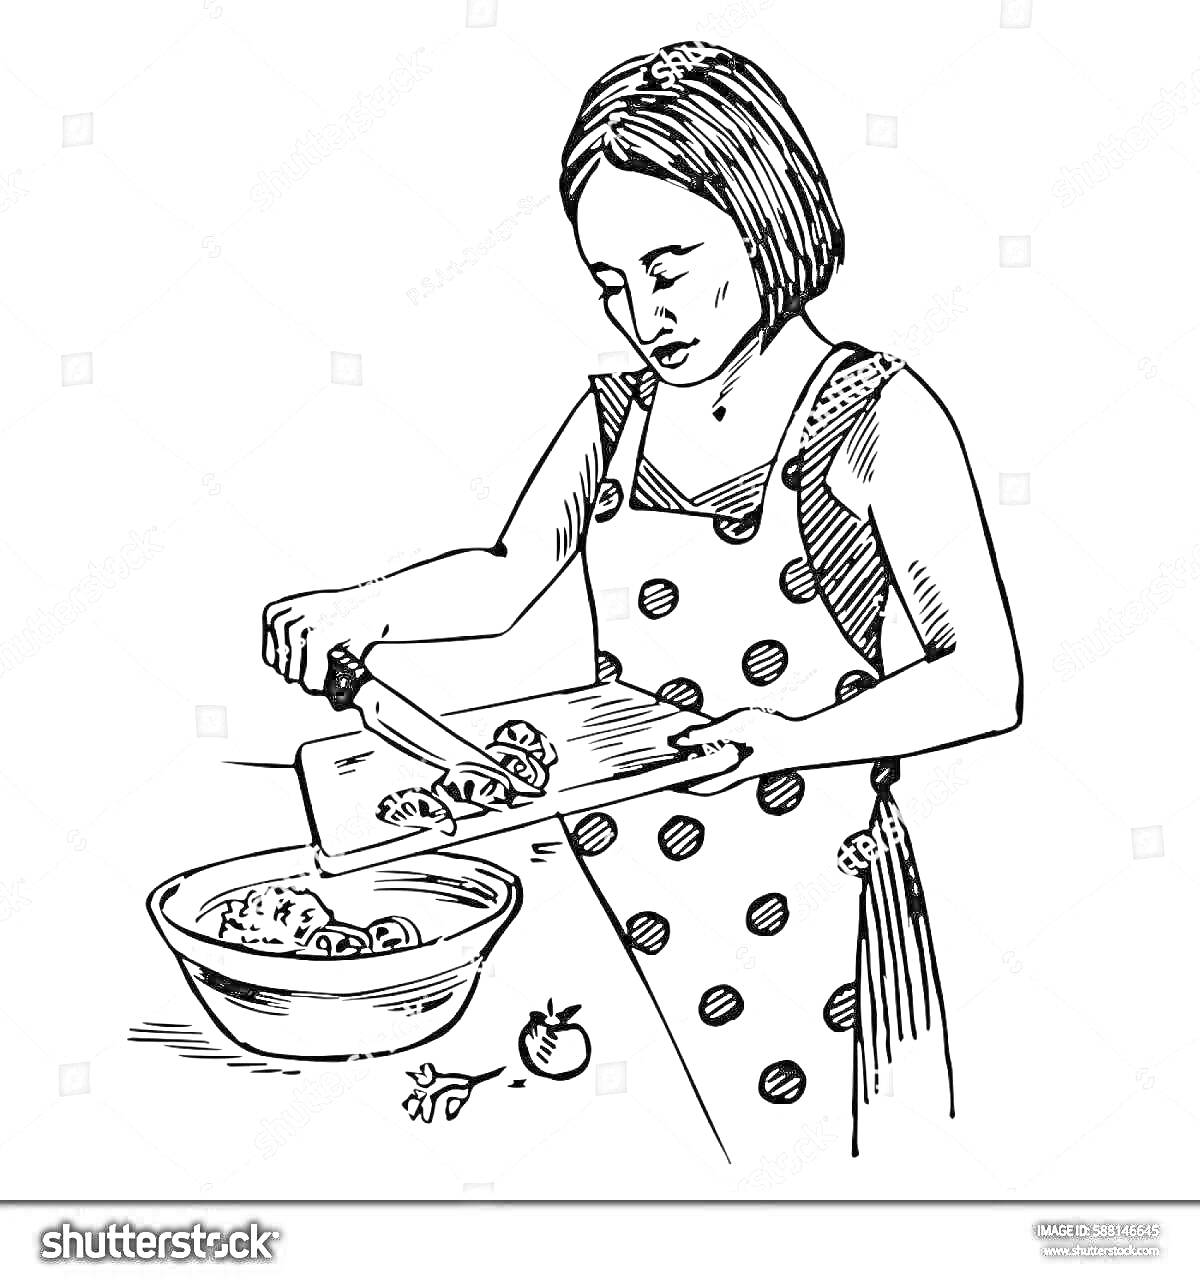 Раскраска Женщина в фартуке с горошком нарезает овощи на разделочной доске и кладёт их в миску. Рядом на столе лежат два маленьких помидора и нож.